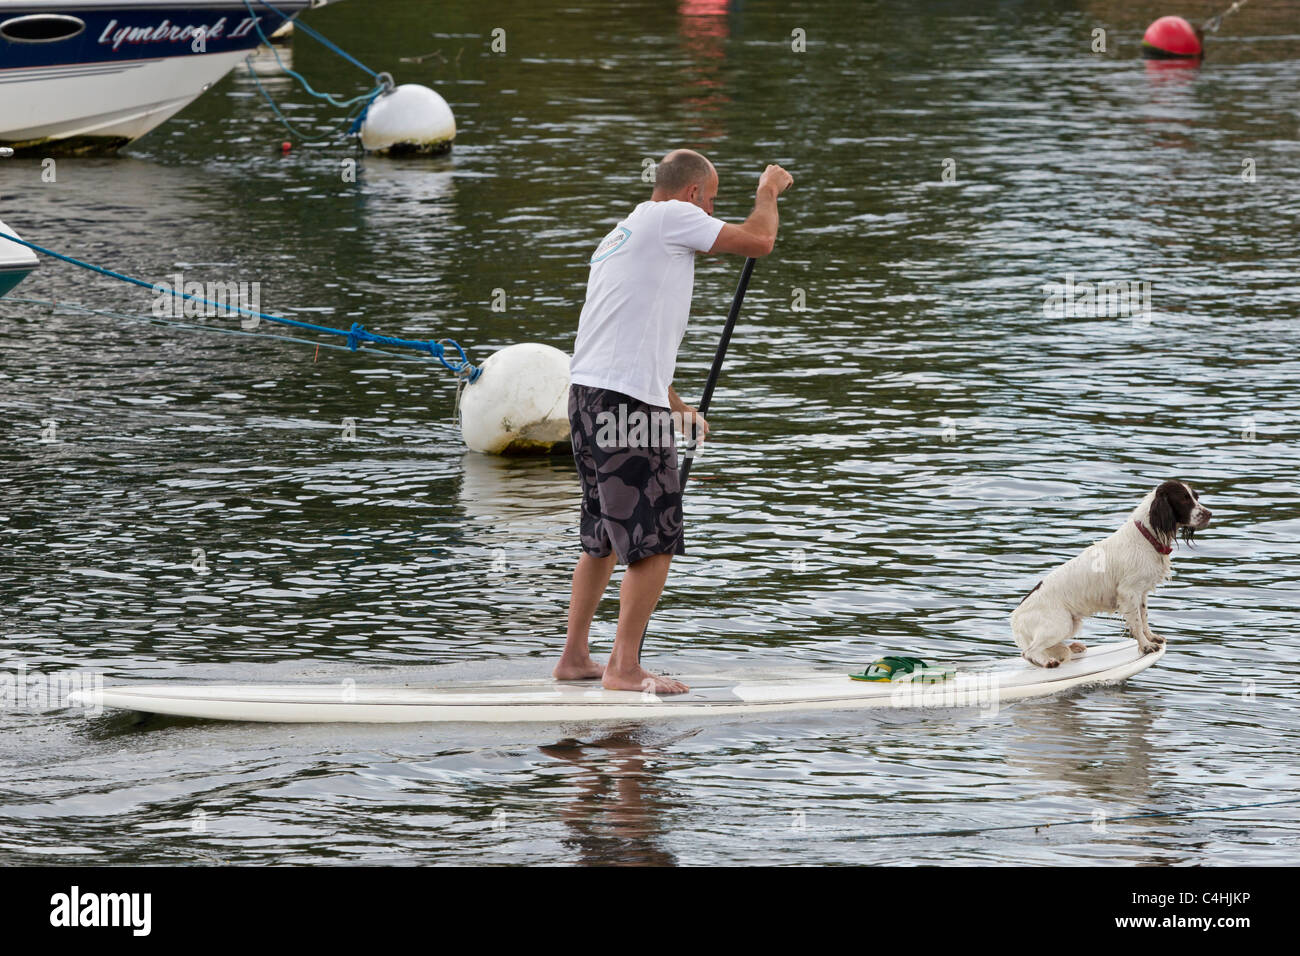 Perro de surfboard paddleboard mirador de mantenimiento mientras el hombre paletas y saldos Foto de stock